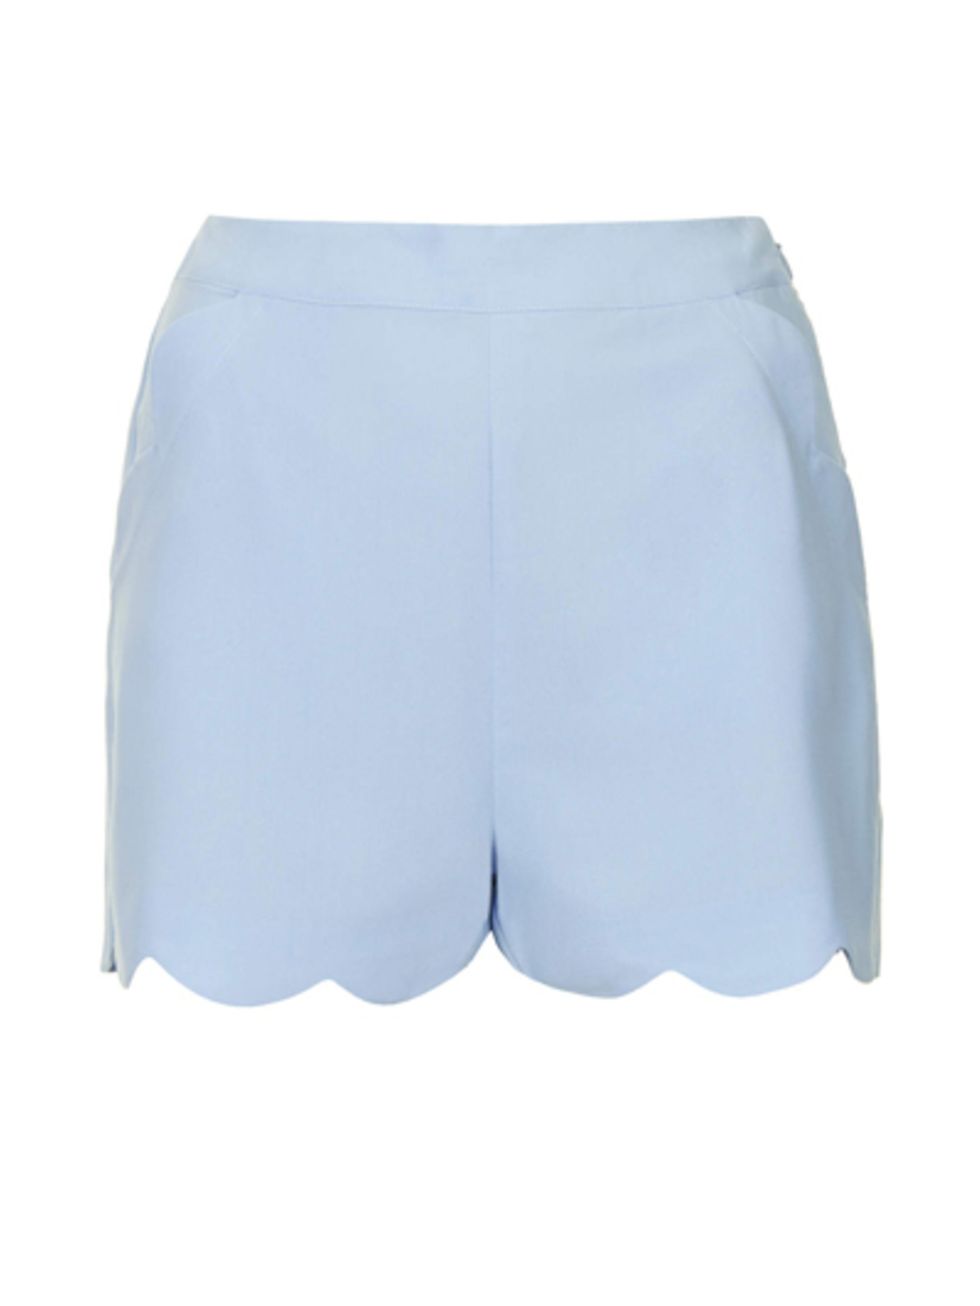 Blue, Textile, White, Shorts, Electric blue, Azure, Active shorts, Cobalt blue, Waist, Trunks, 